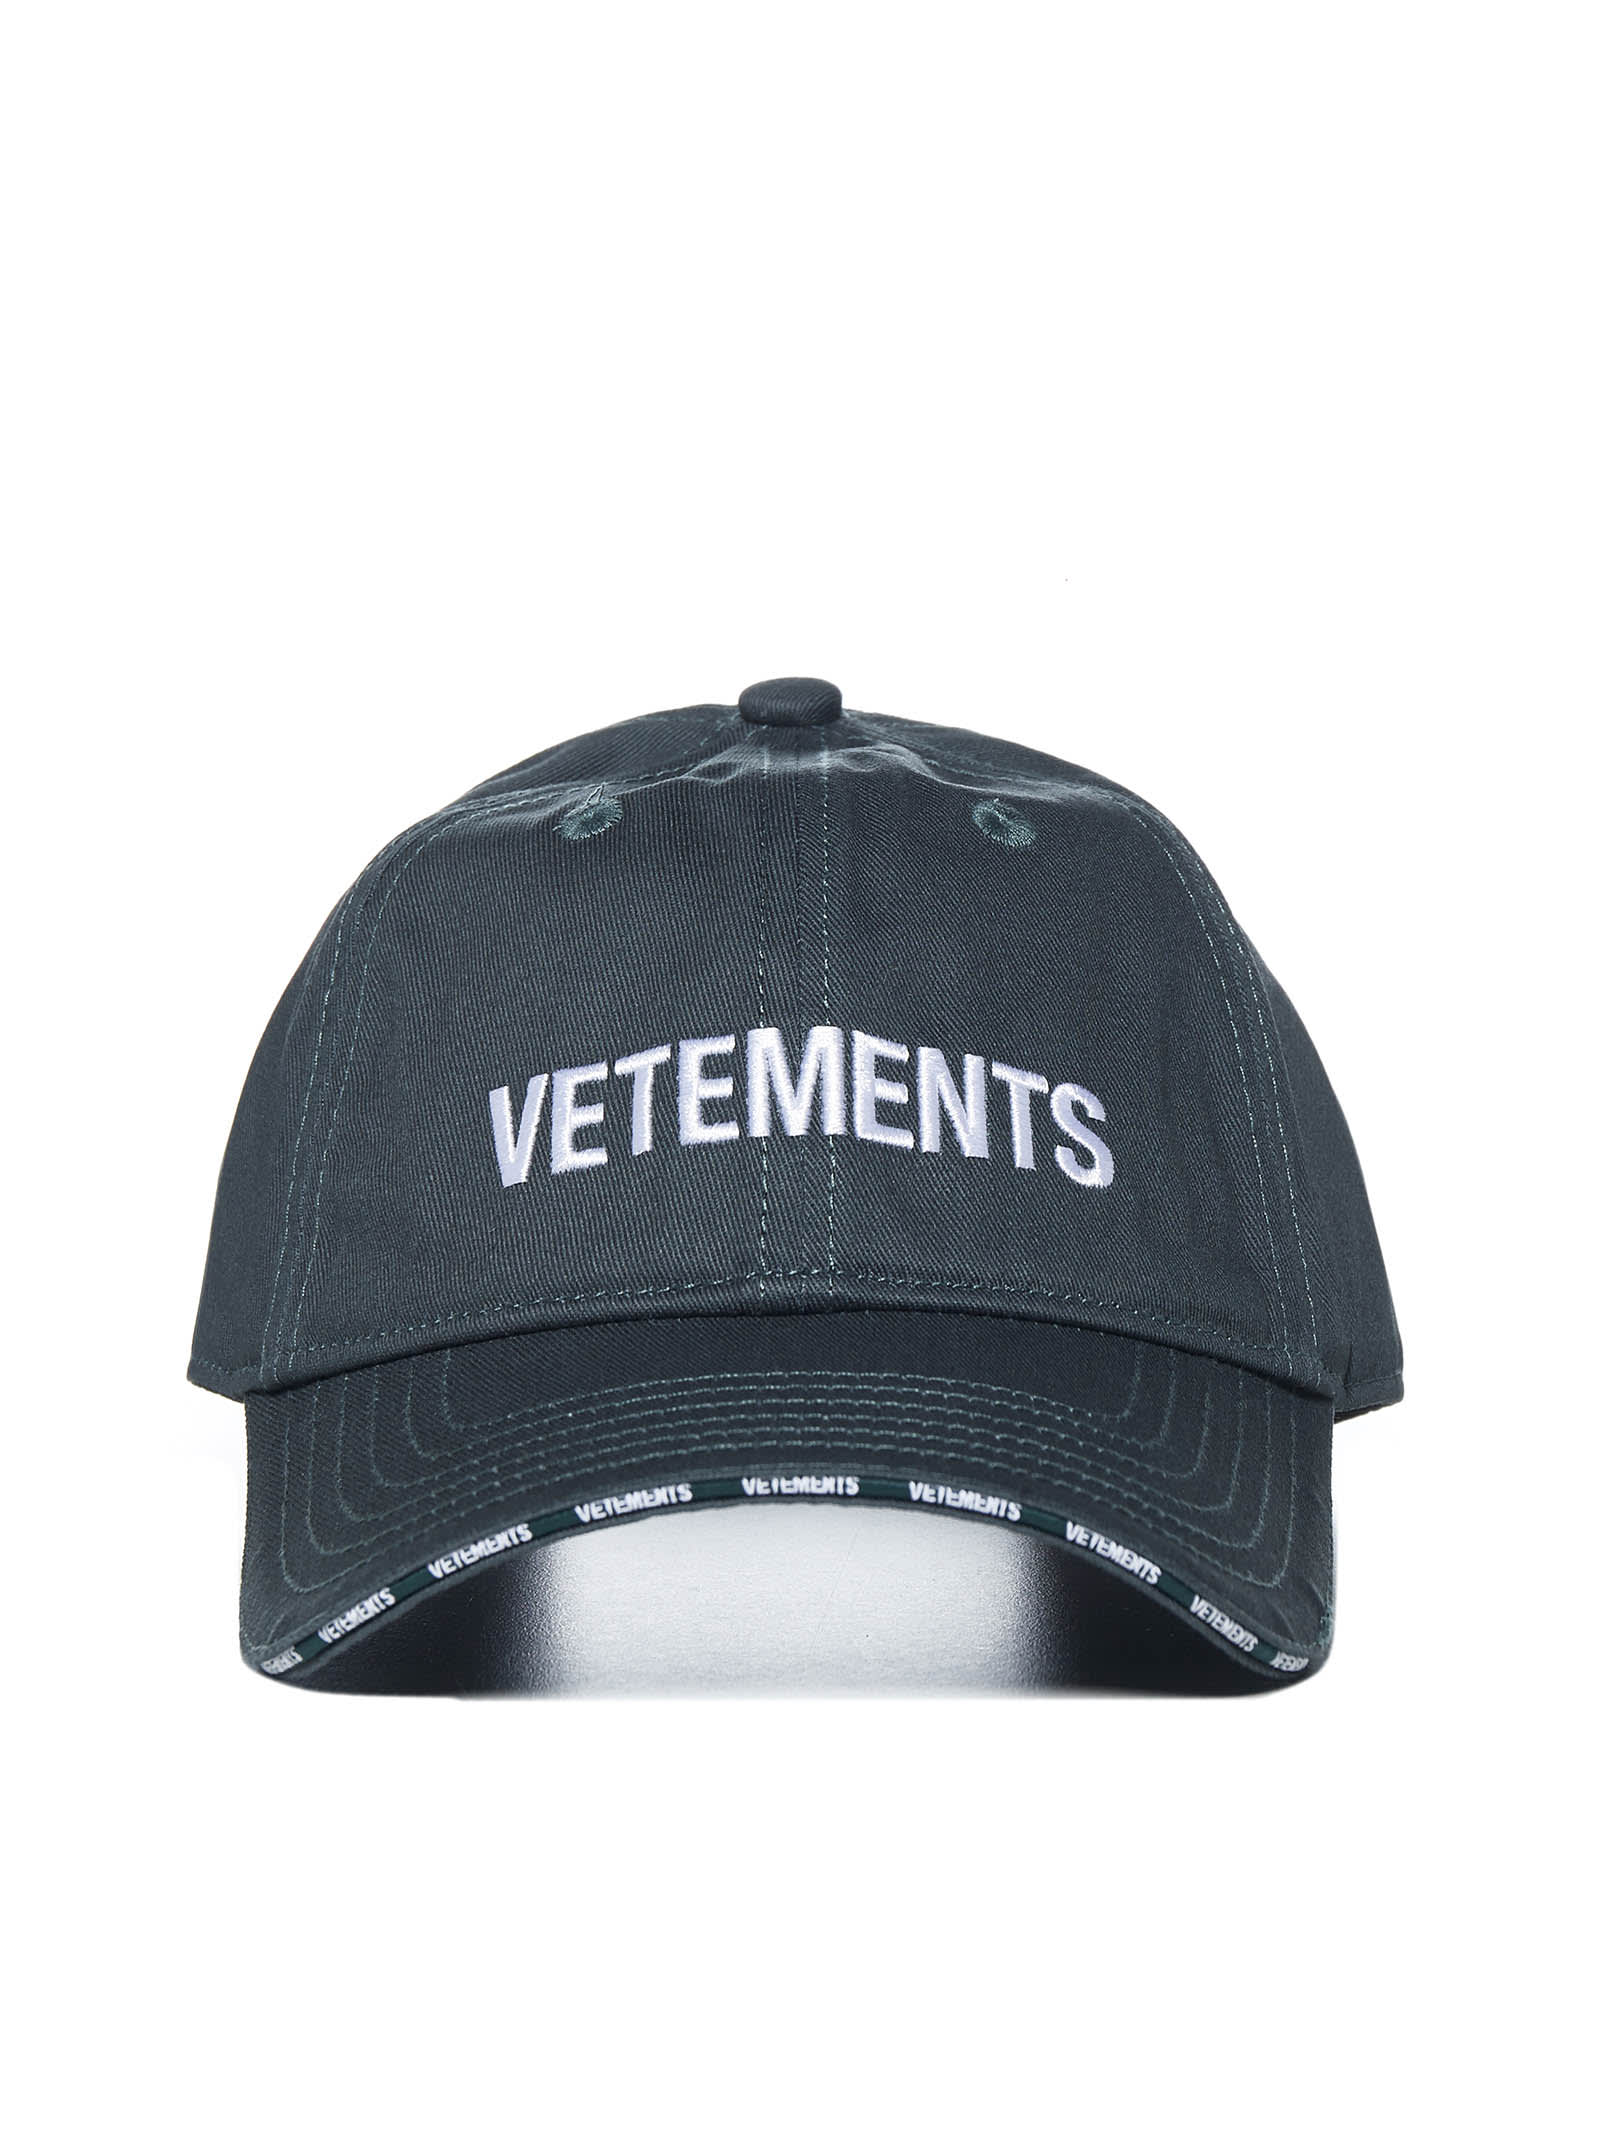 VETEMENTS Hats for Women | ModeSens